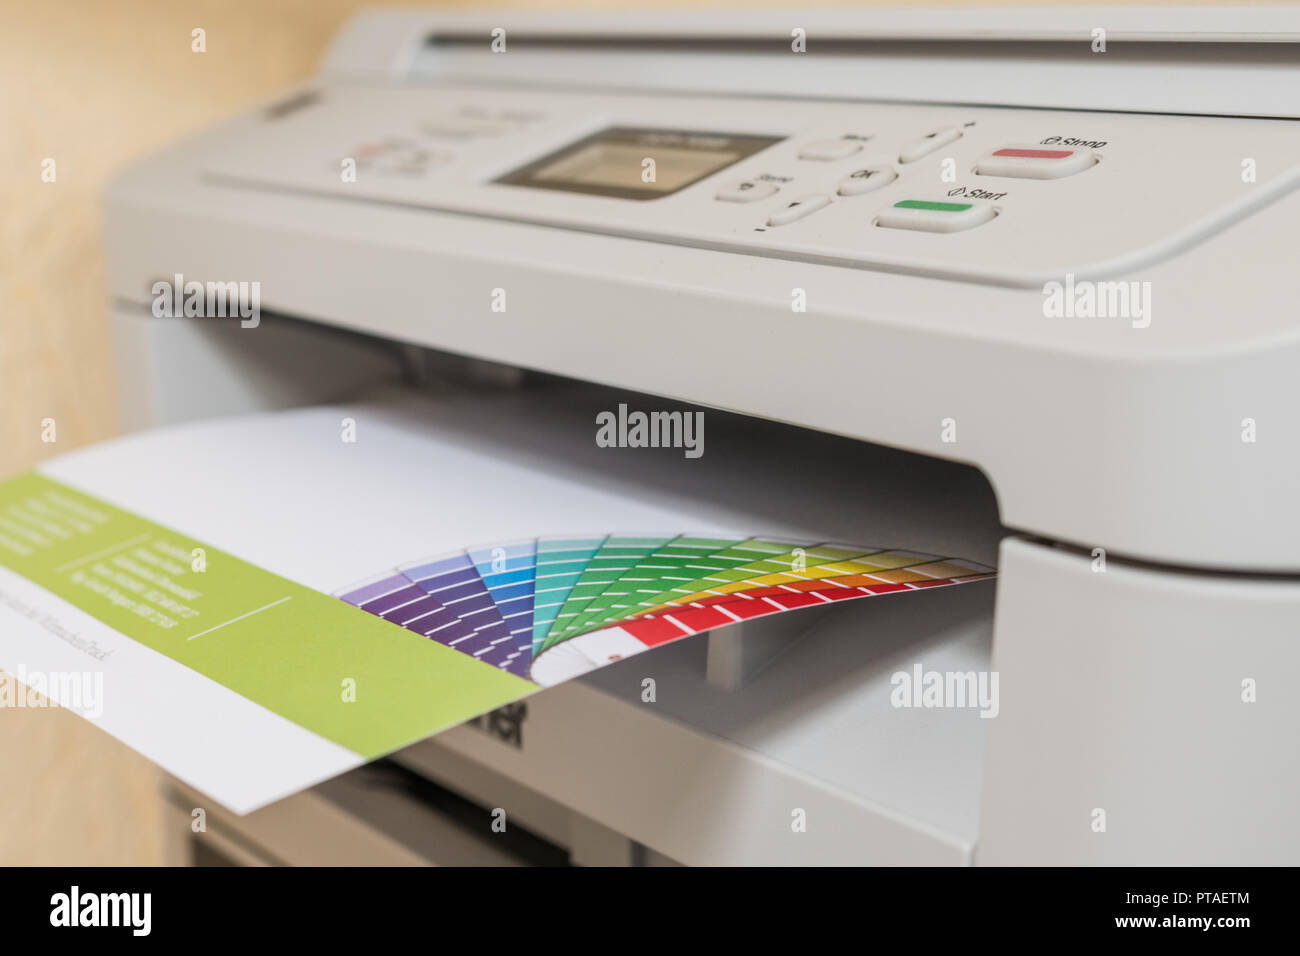 Feuille de papier imprimée sort de l'imprimante Photo Stock - Alamy